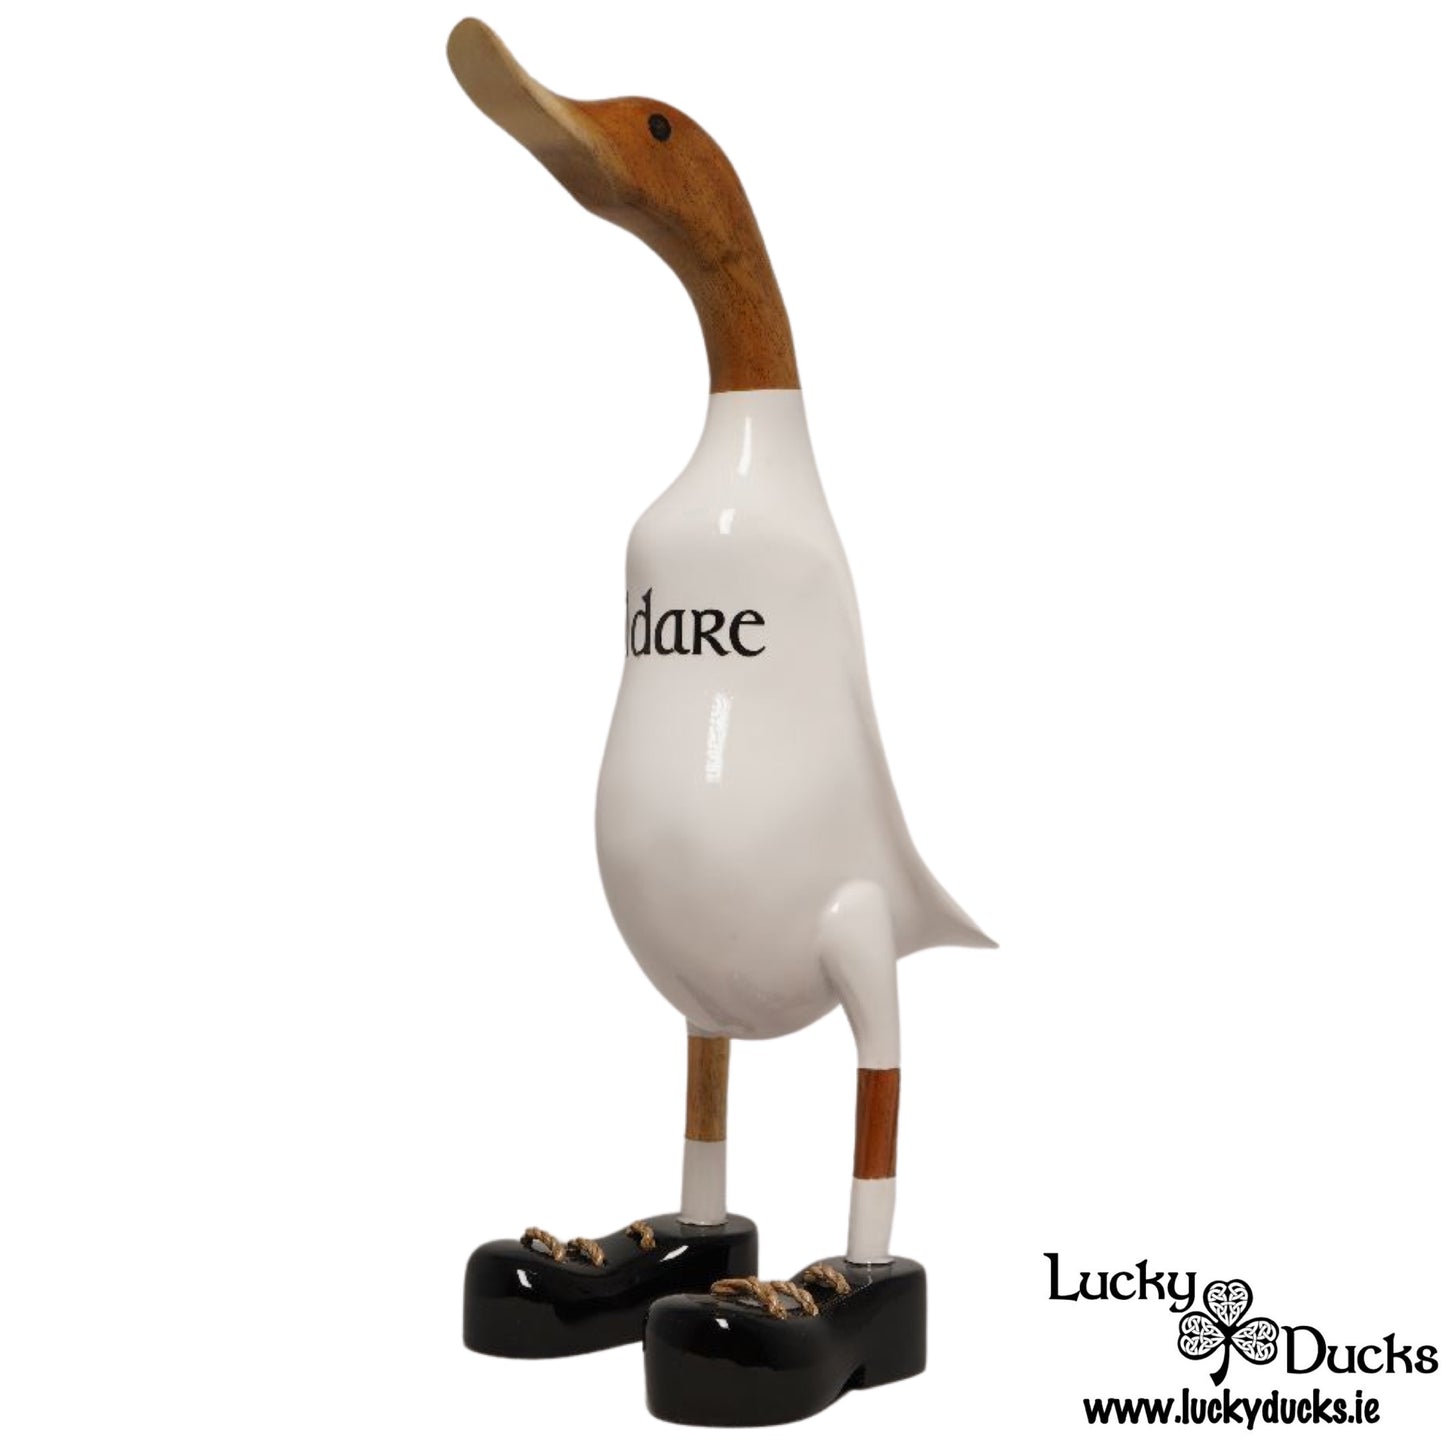 Kildare Duck